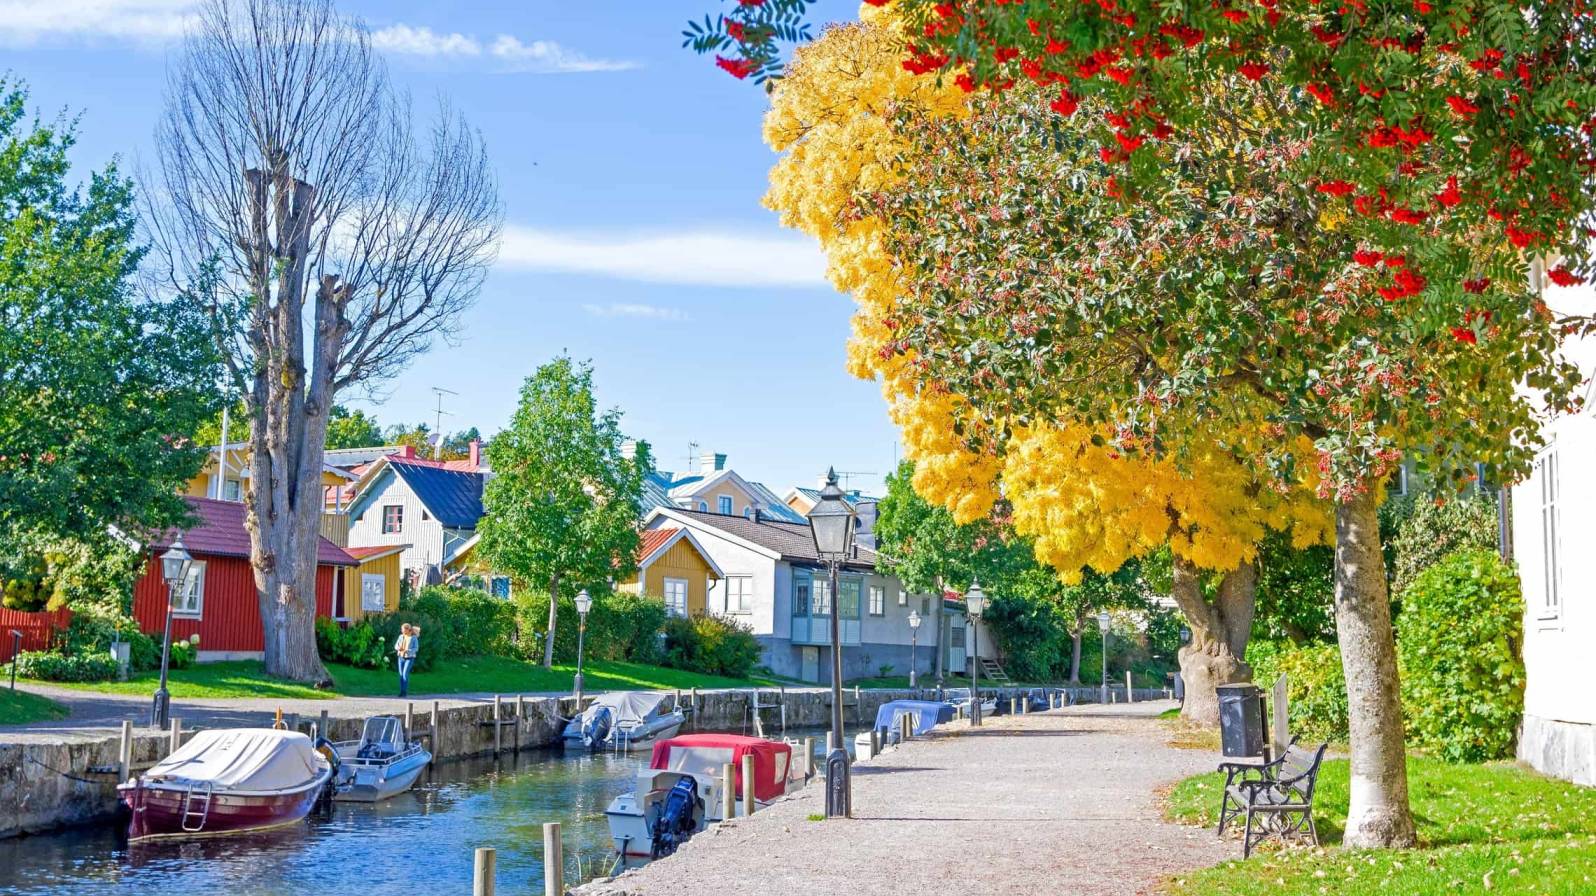 Trosan kaupunki Ruotsissa. Kuvassa vanhoja varikkaita puutaloja pienen joen aarella